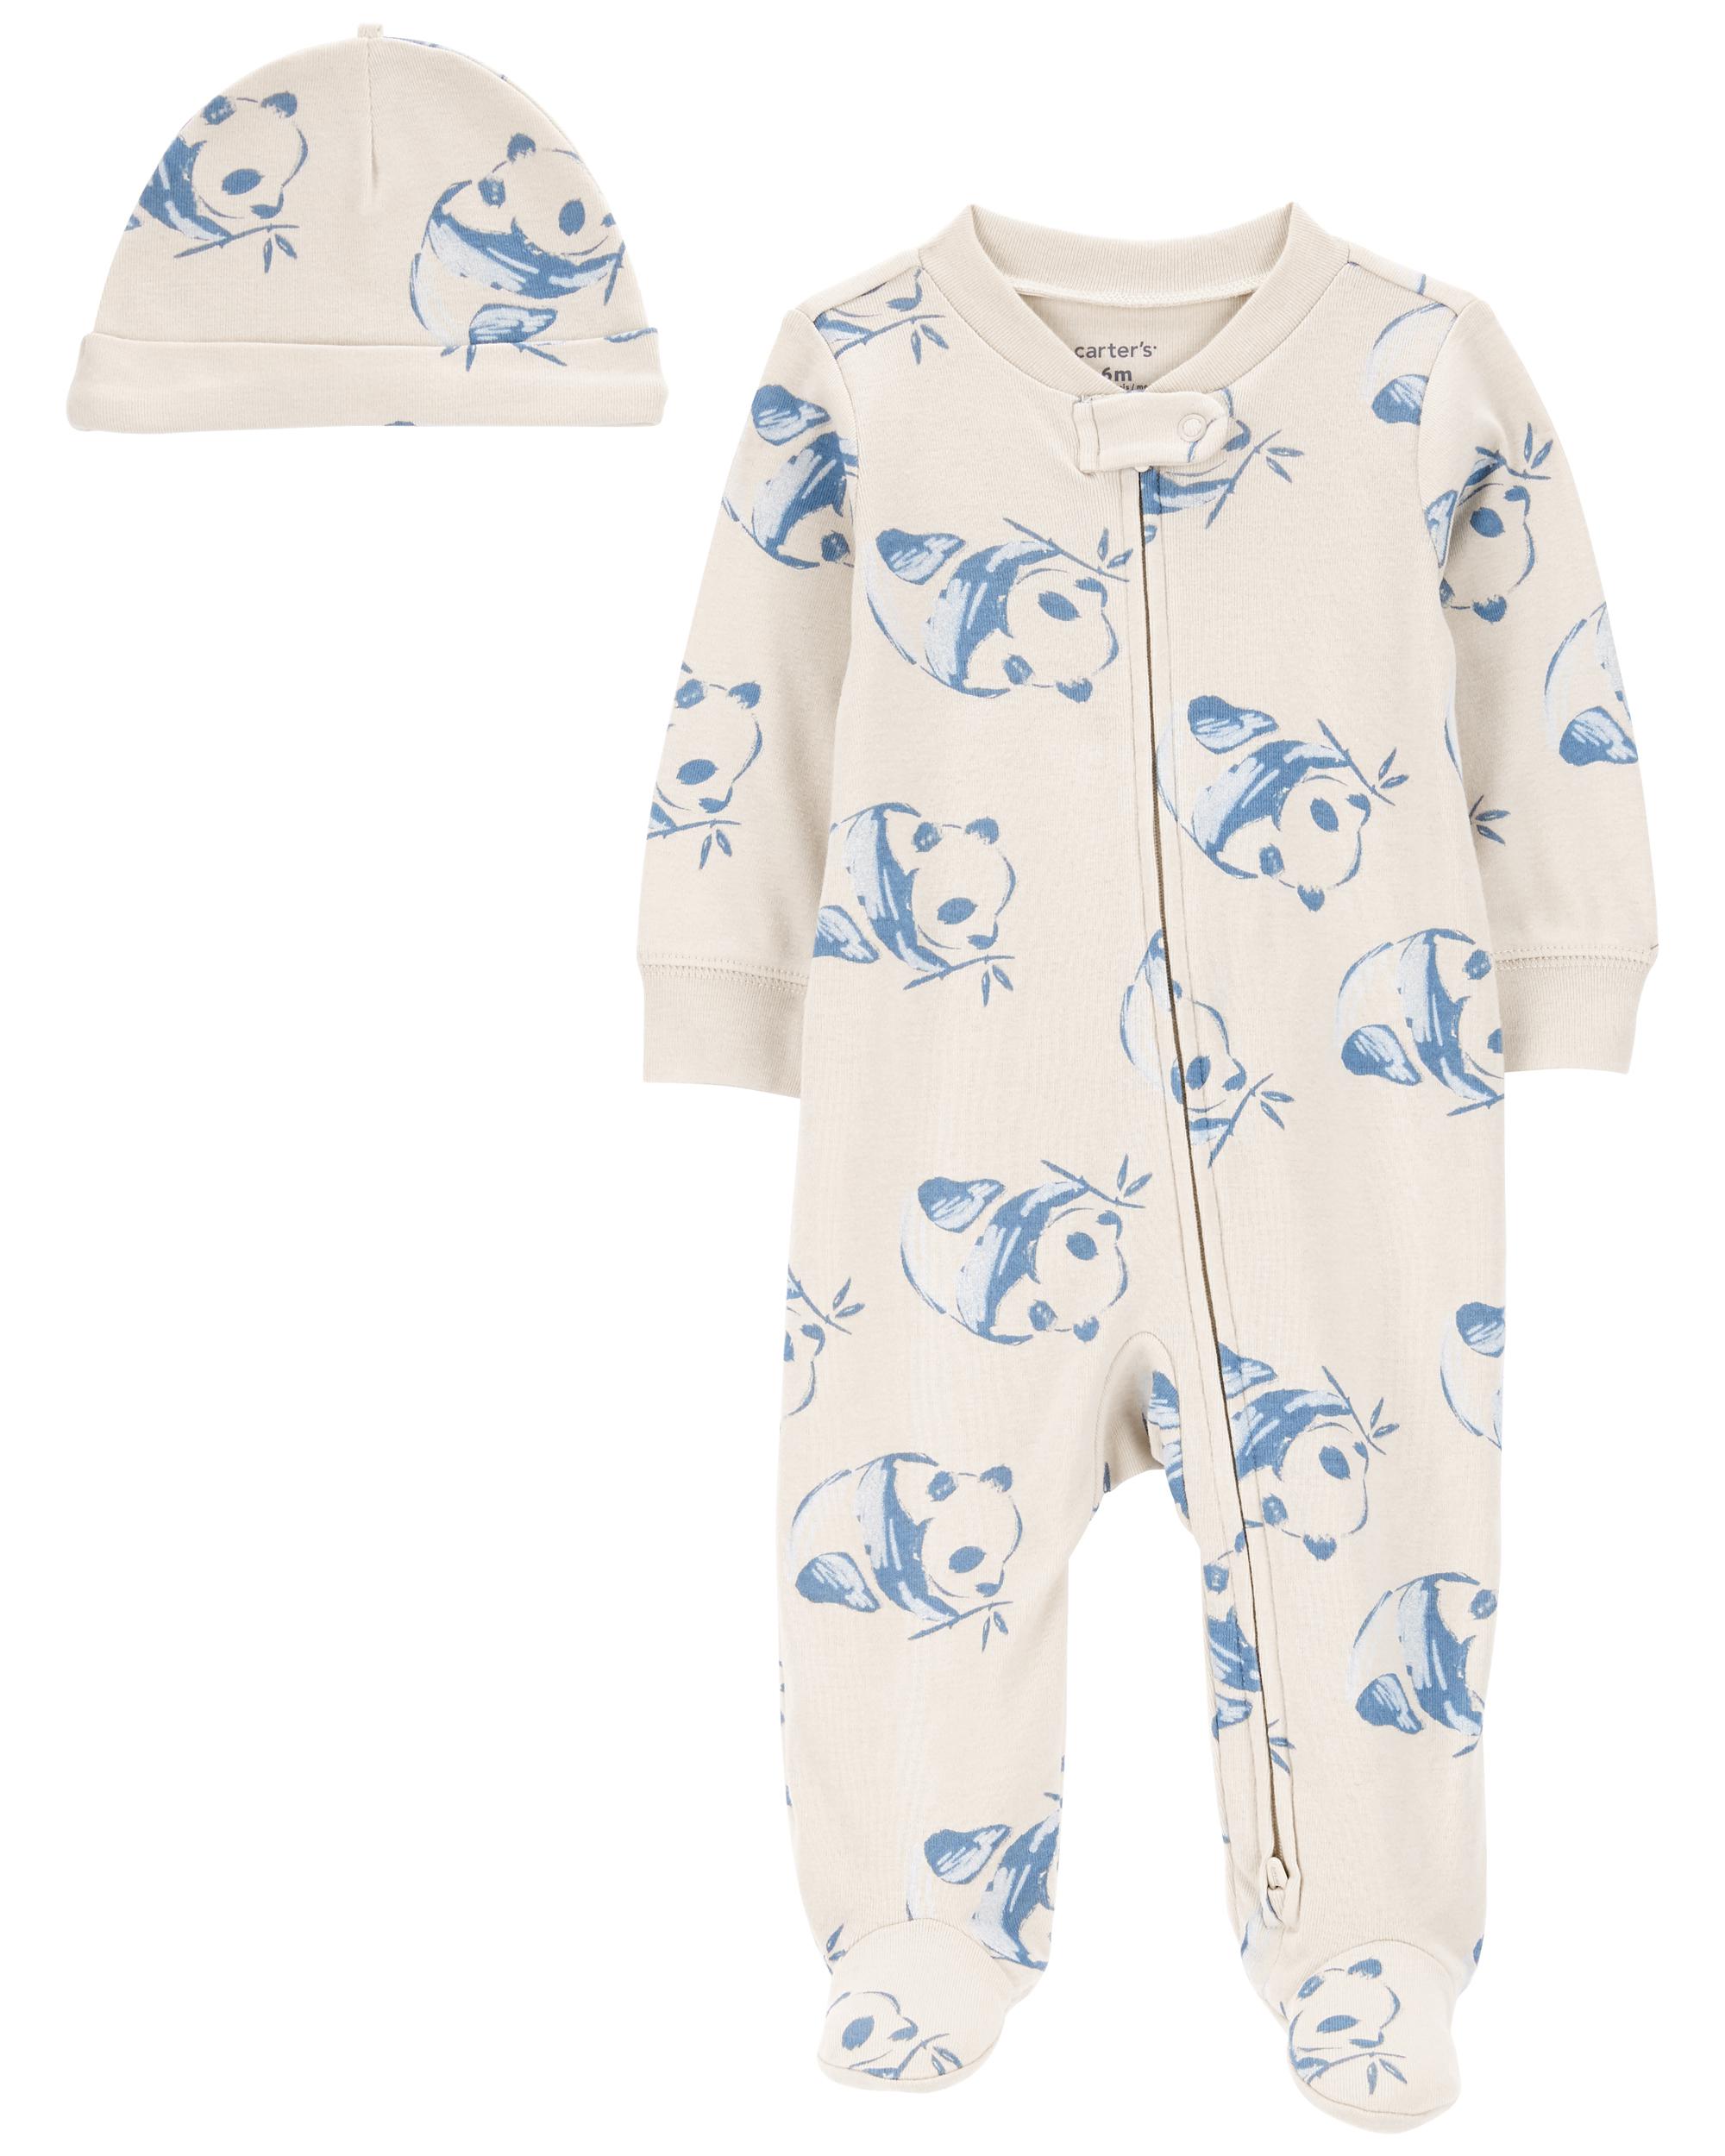 Panda 2-Piece Sleeper Pyjamas and Cap Set